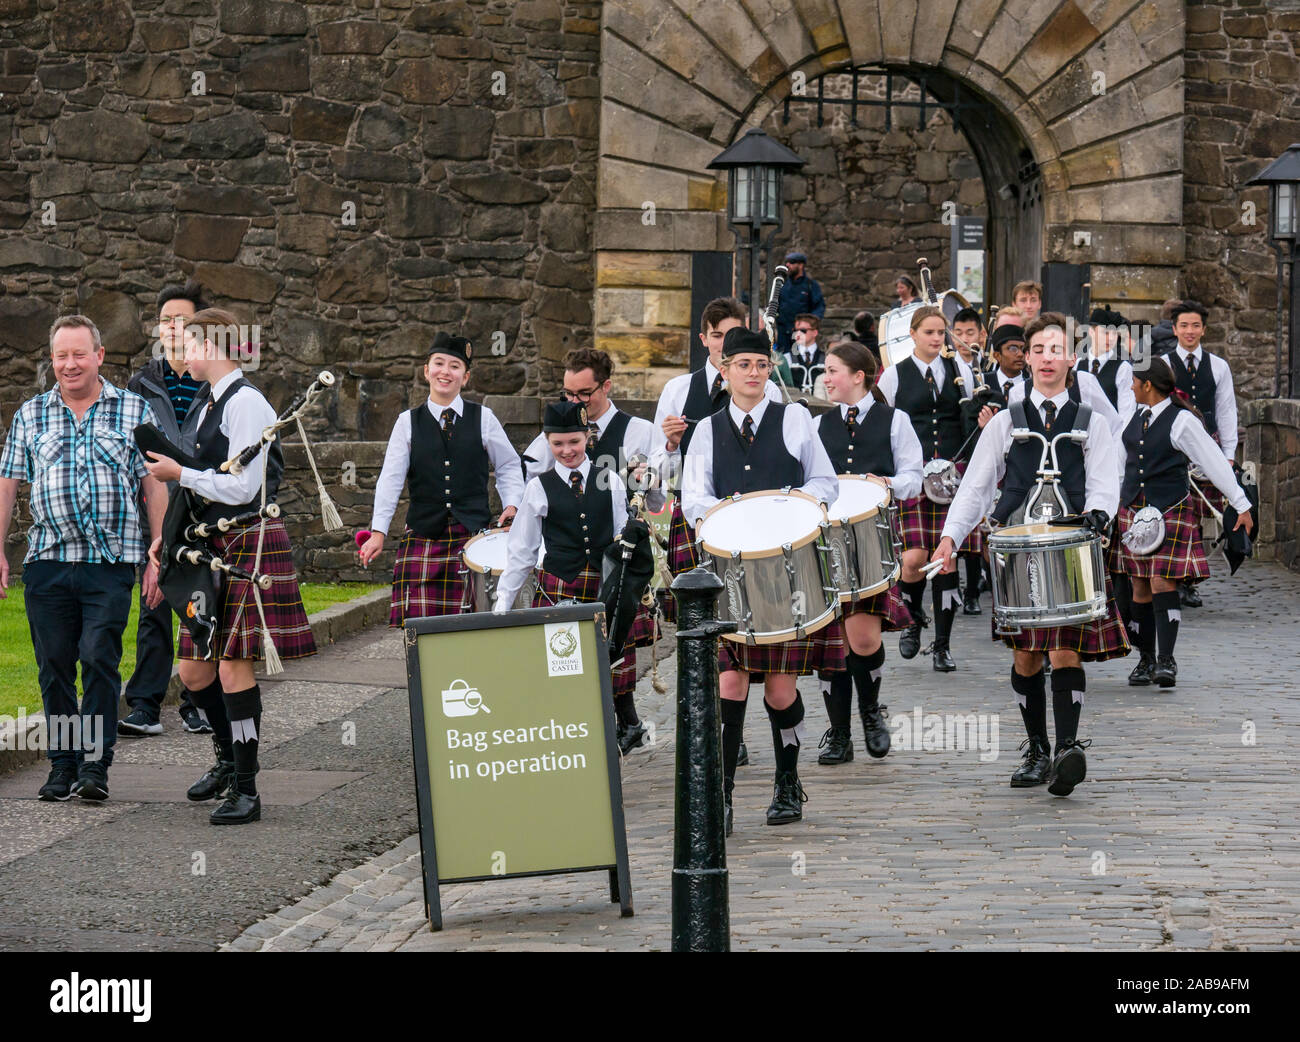 Les jeunes ou les adolescents de l'école pipe band avec tambours et cornemuses portant le kilt de contrepartie, porte d'entrée du château de Stirling, Scotland, UK Banque D'Images